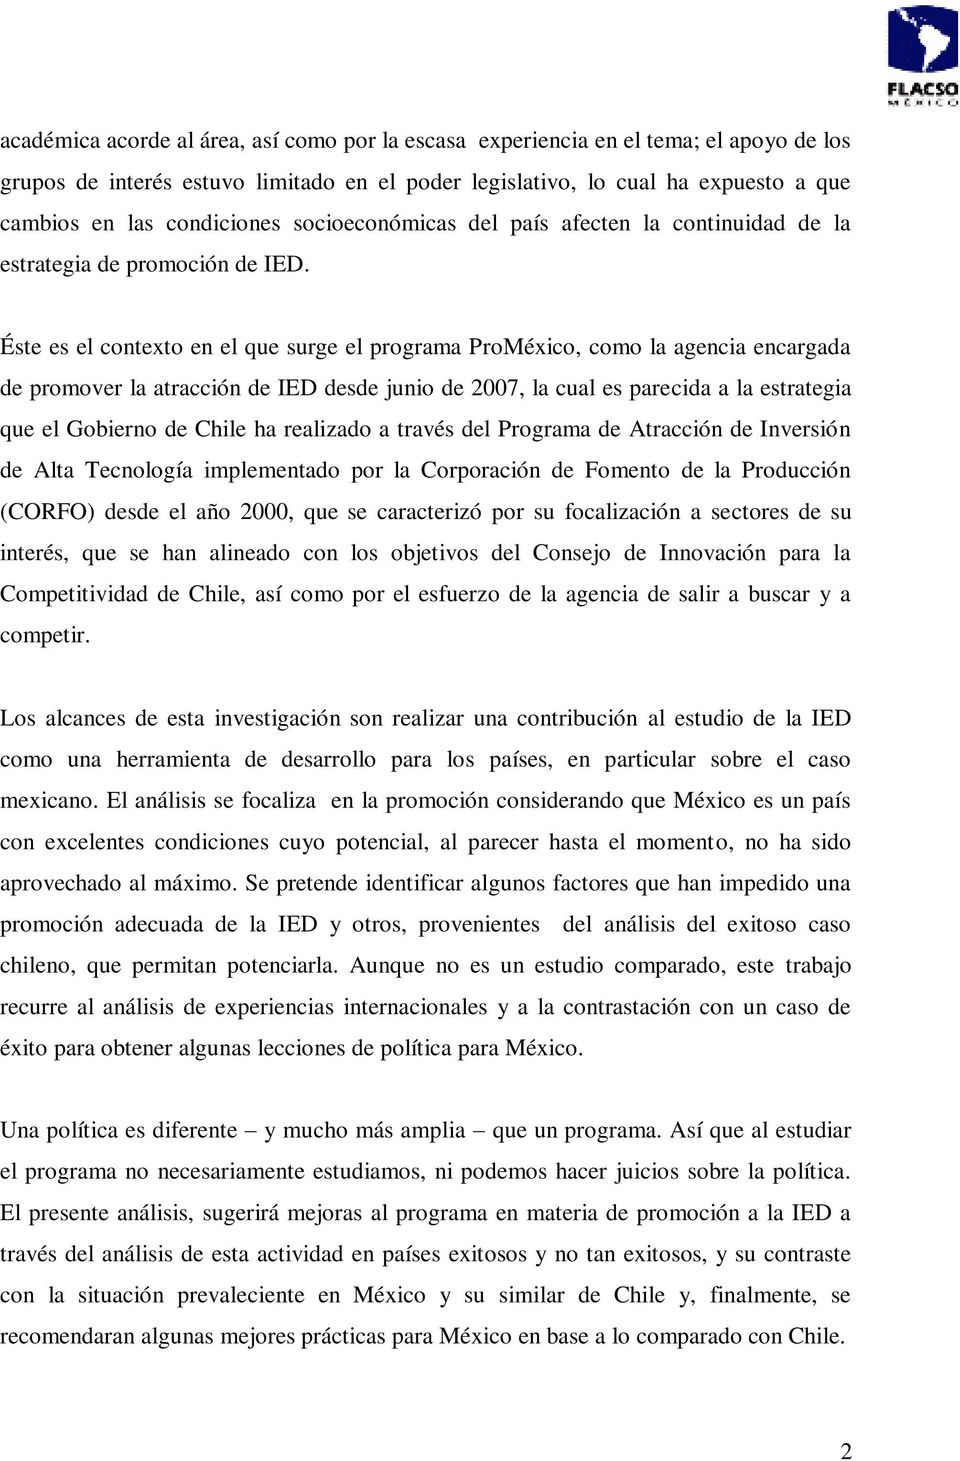 Éste es el contexto en el que surge el programa ProMéxico, como la agencia encargada de promover la atracción de IED desde junio de 2007, la cual es parecida a la estrategia que el Gobierno de Chile